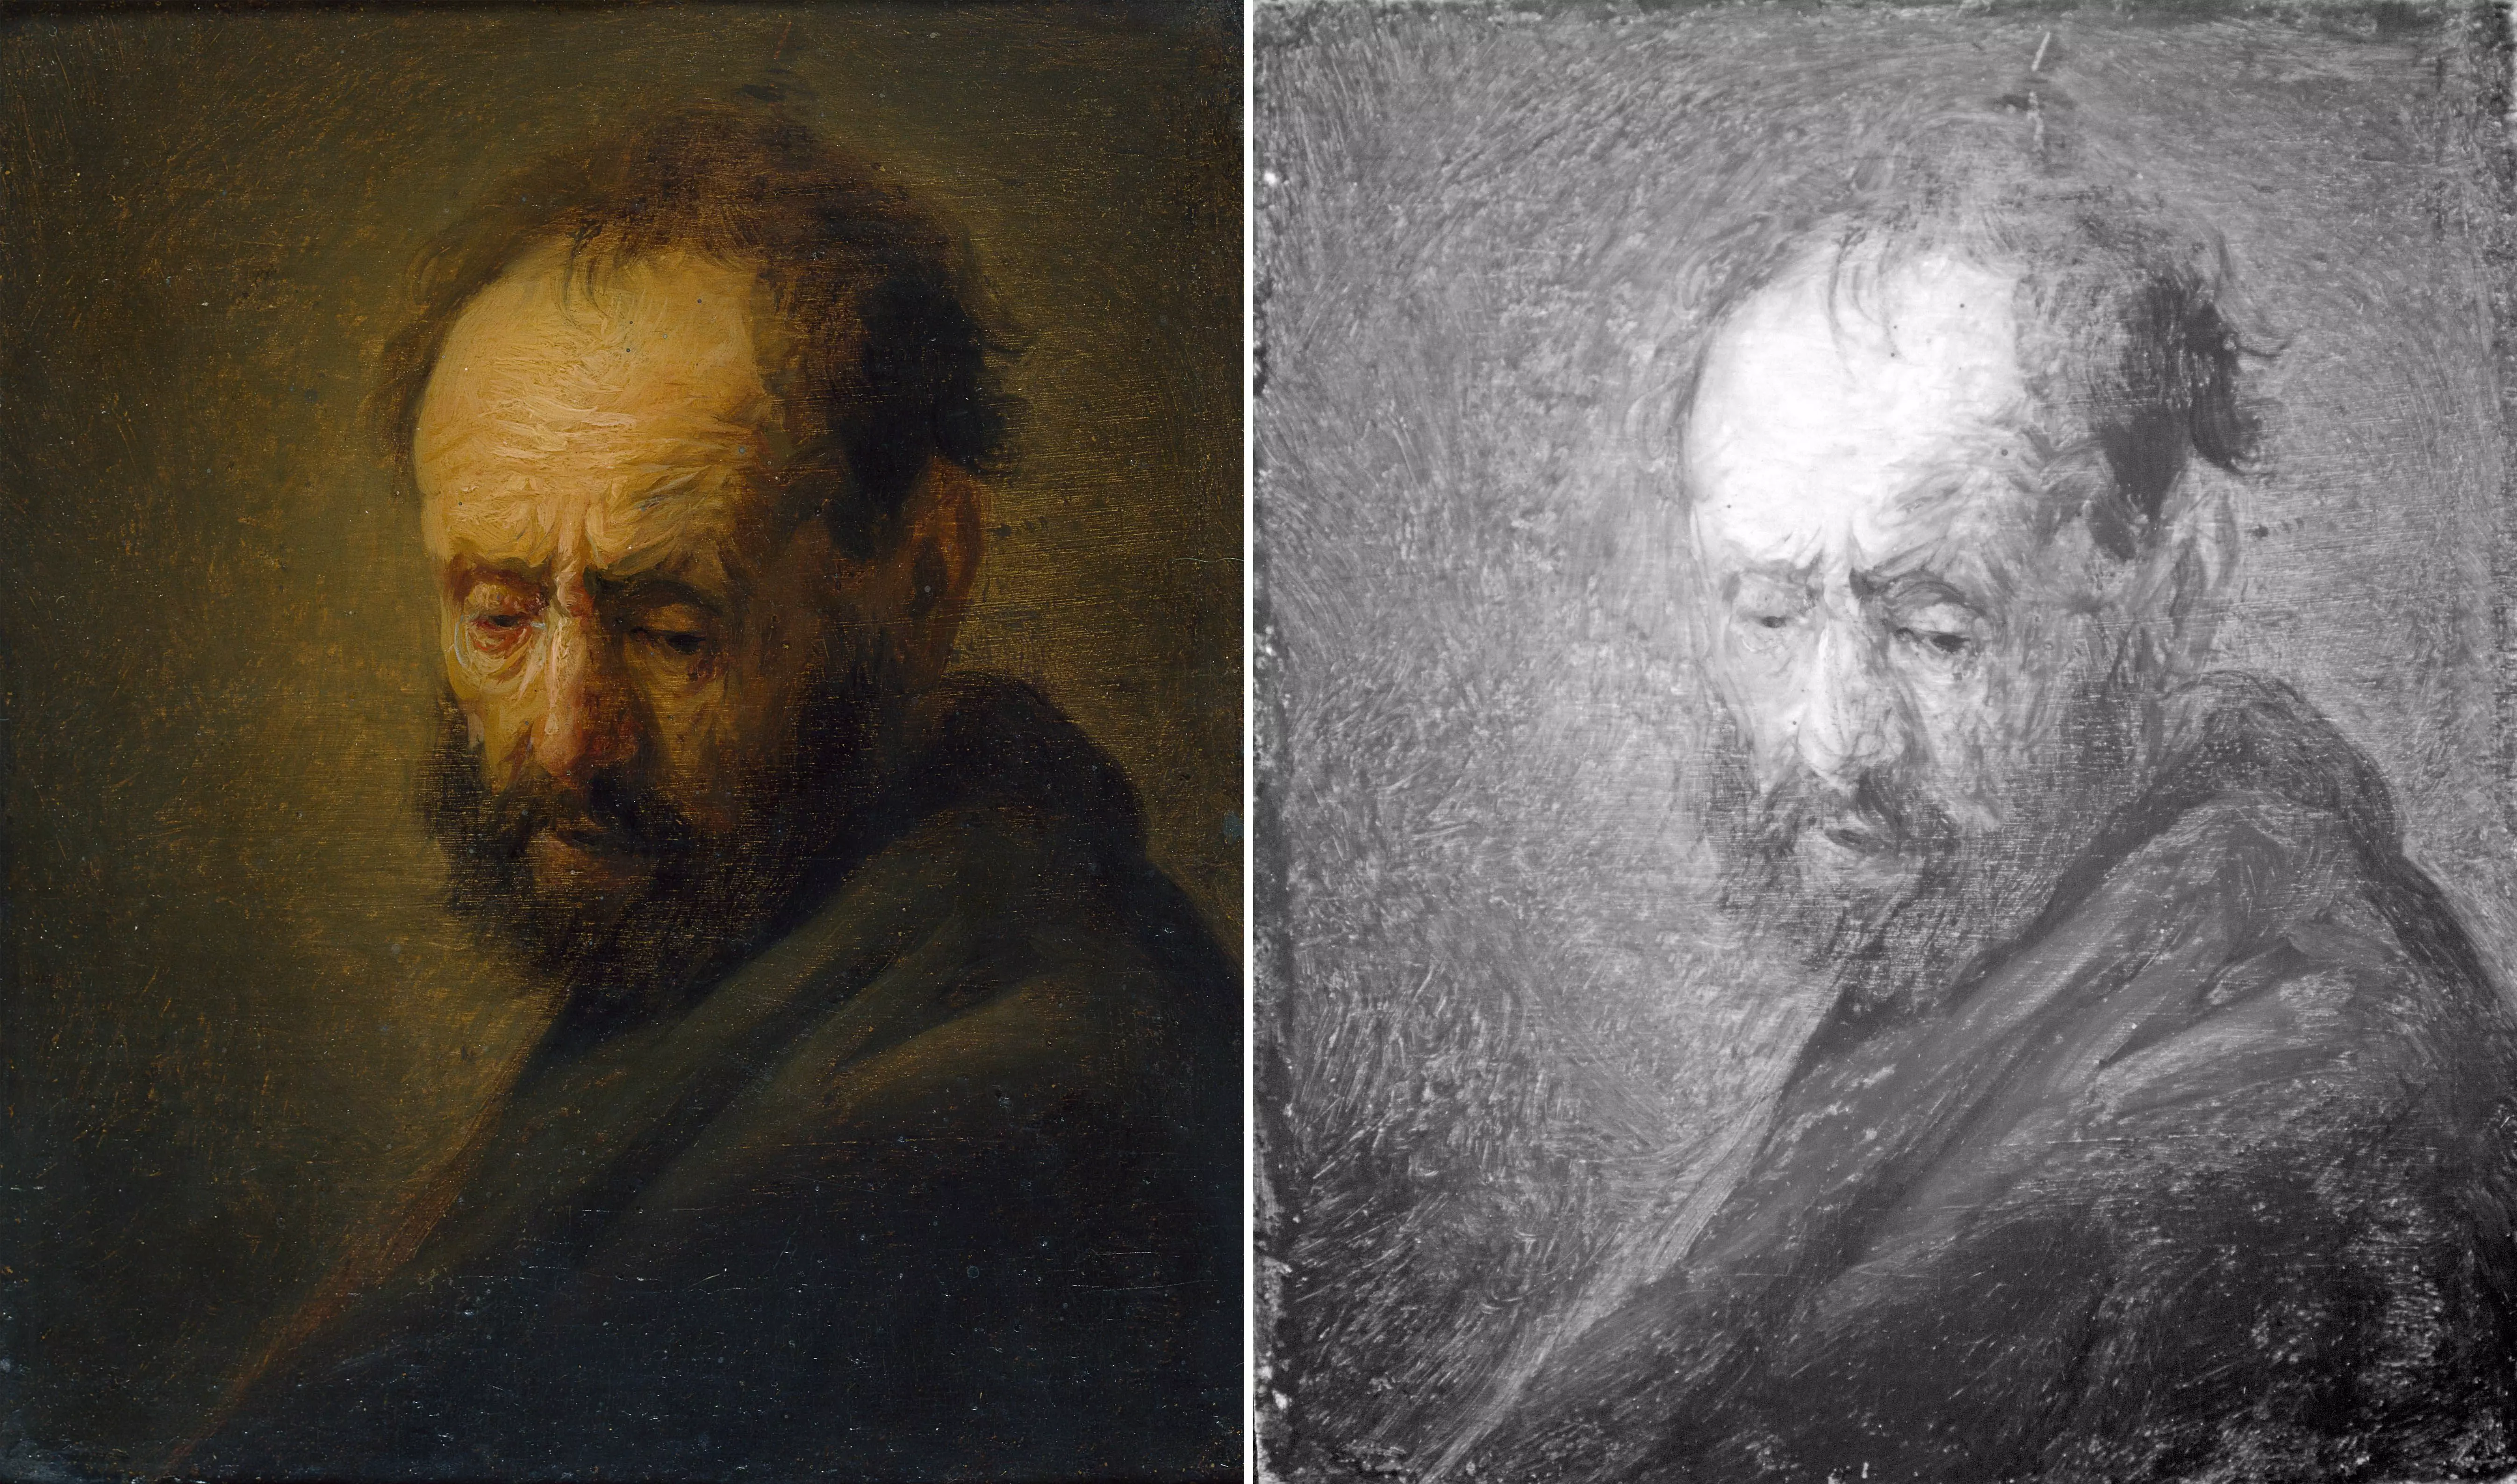 Картина "Голова бородатого мужчины" и ее инфракрасная версия справа